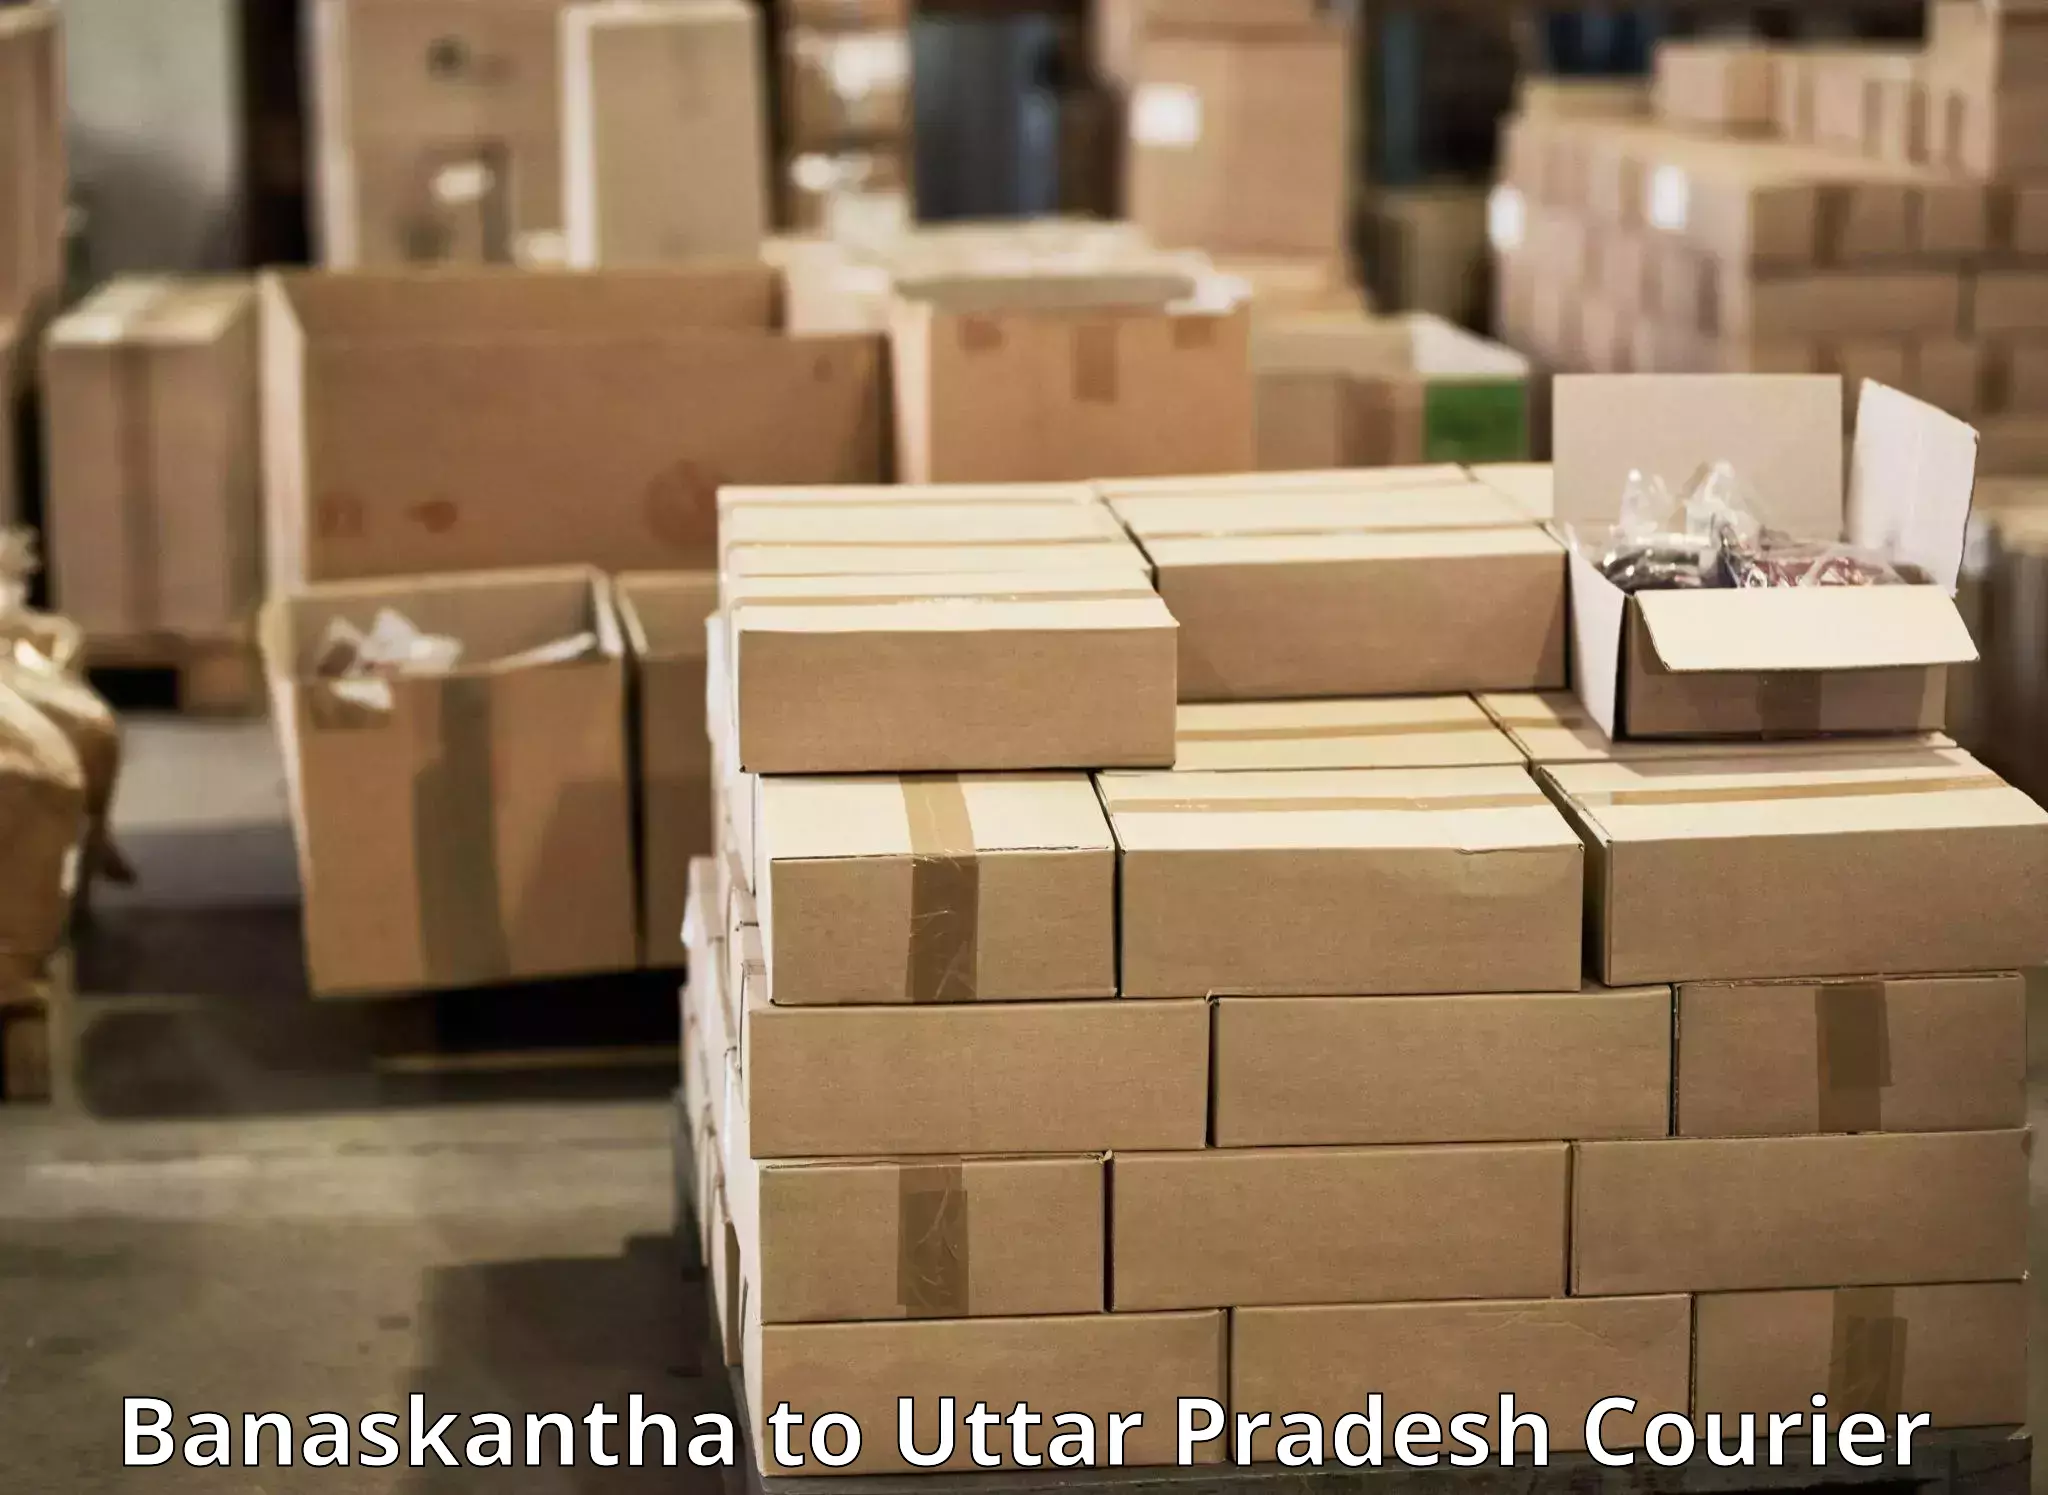 Fast shipping solutions Banaskantha to Najibabad